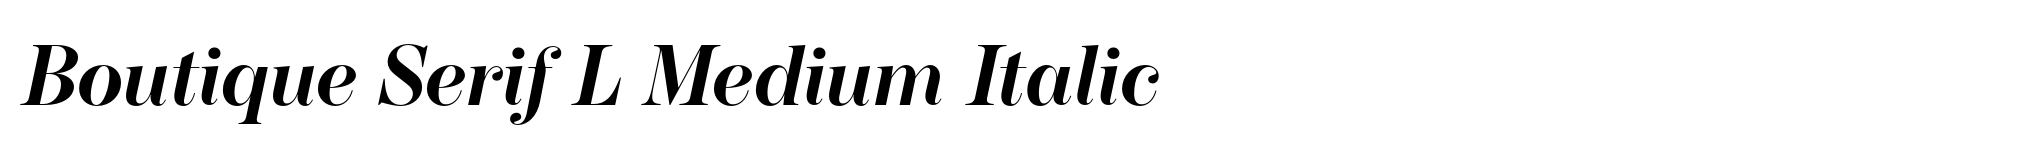 Boutique Serif L Medium Italic image